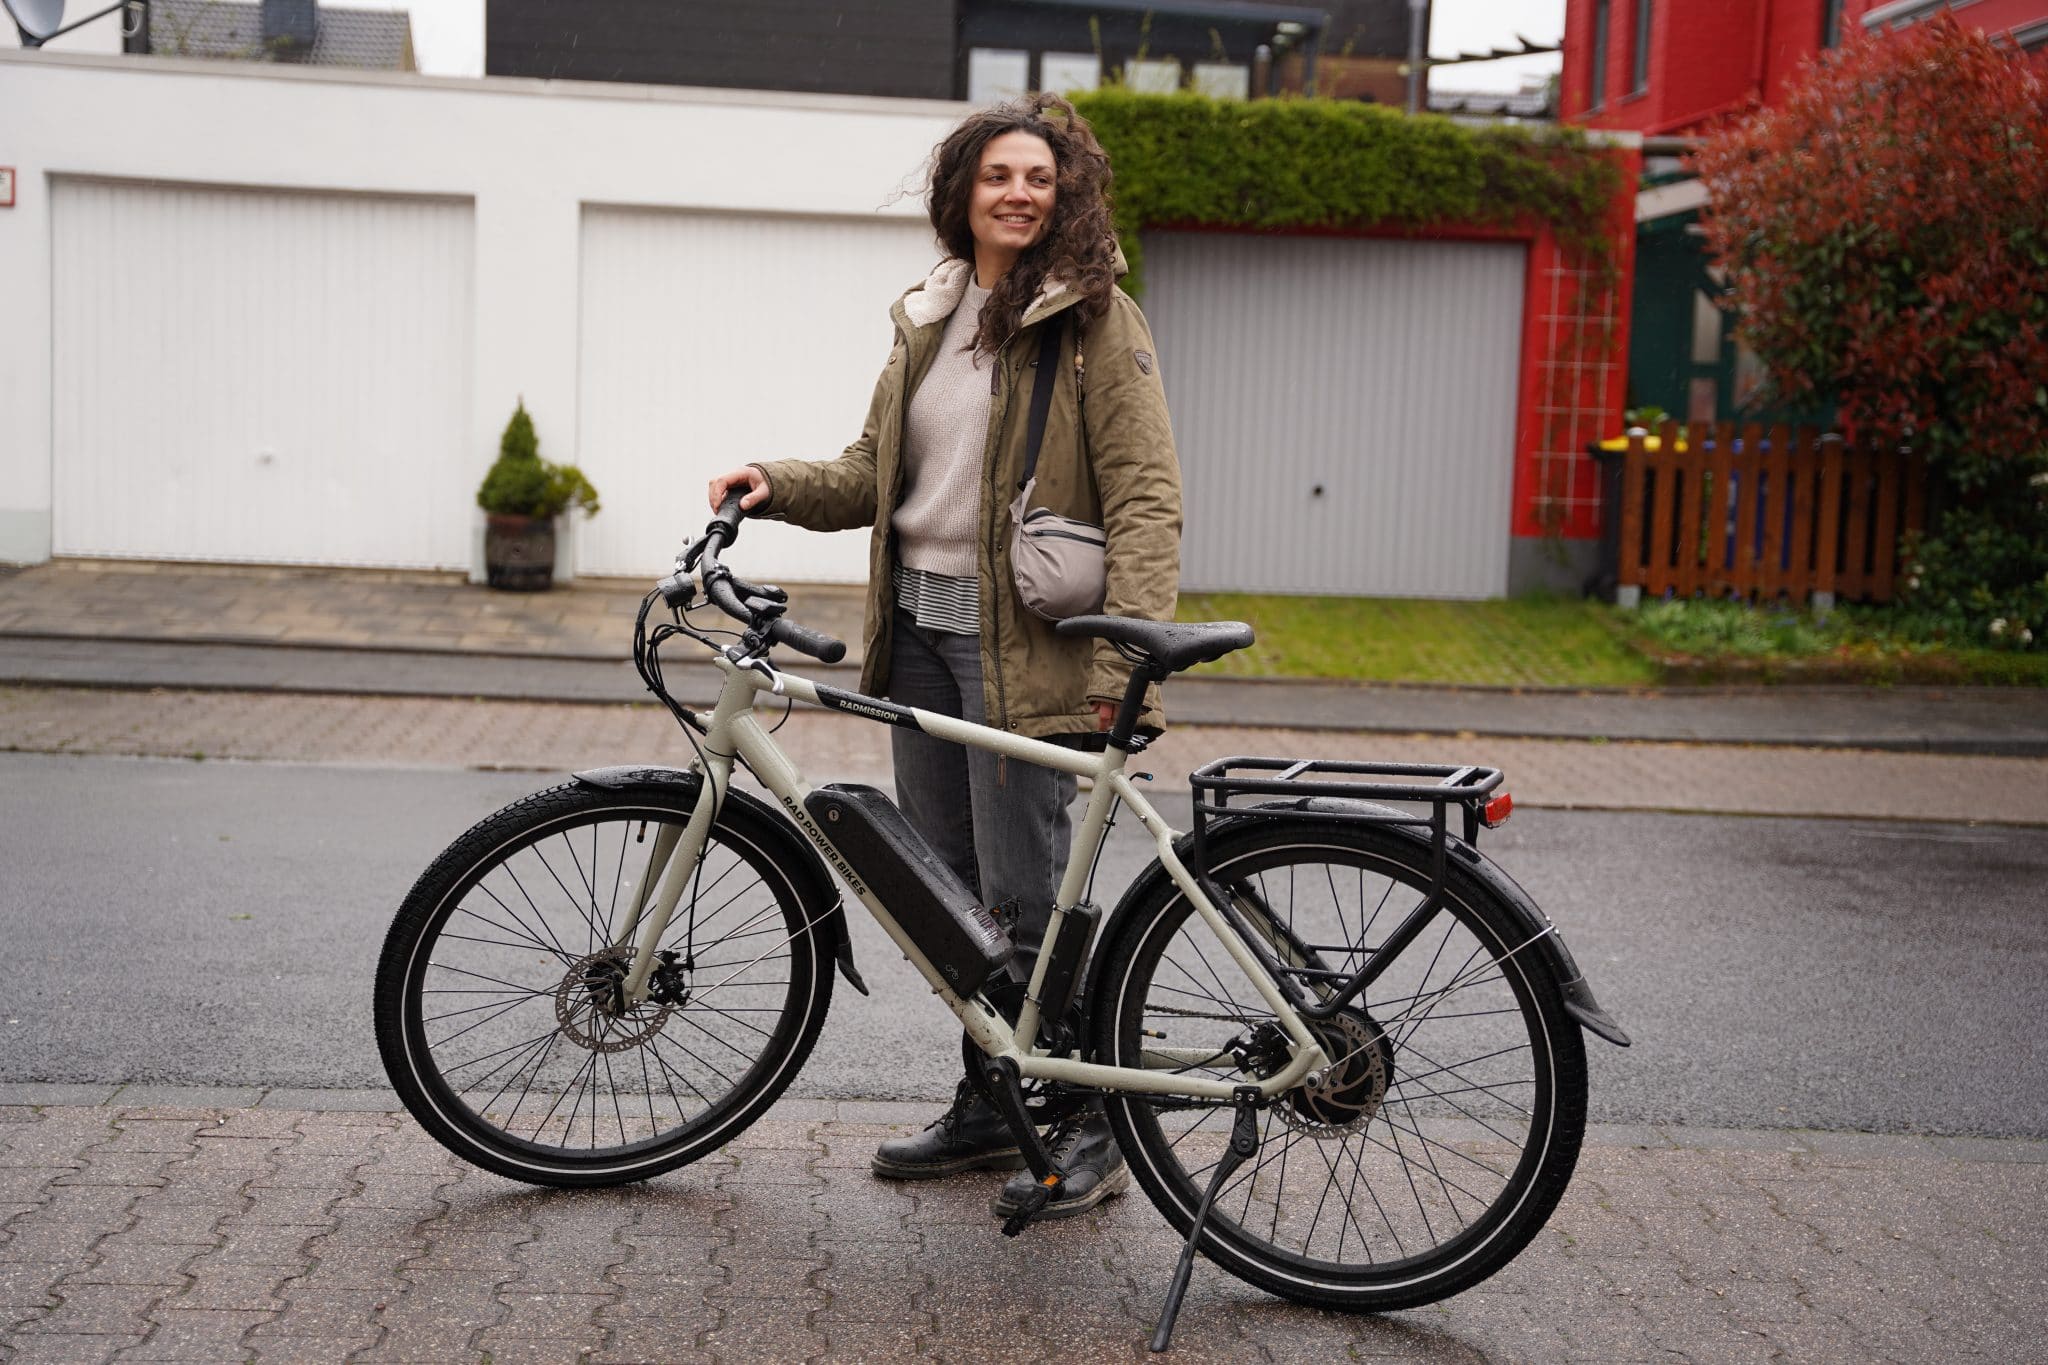 E-Bike | Fahrrad | Regenkleidung - A7300500 scaled - eBikeNews